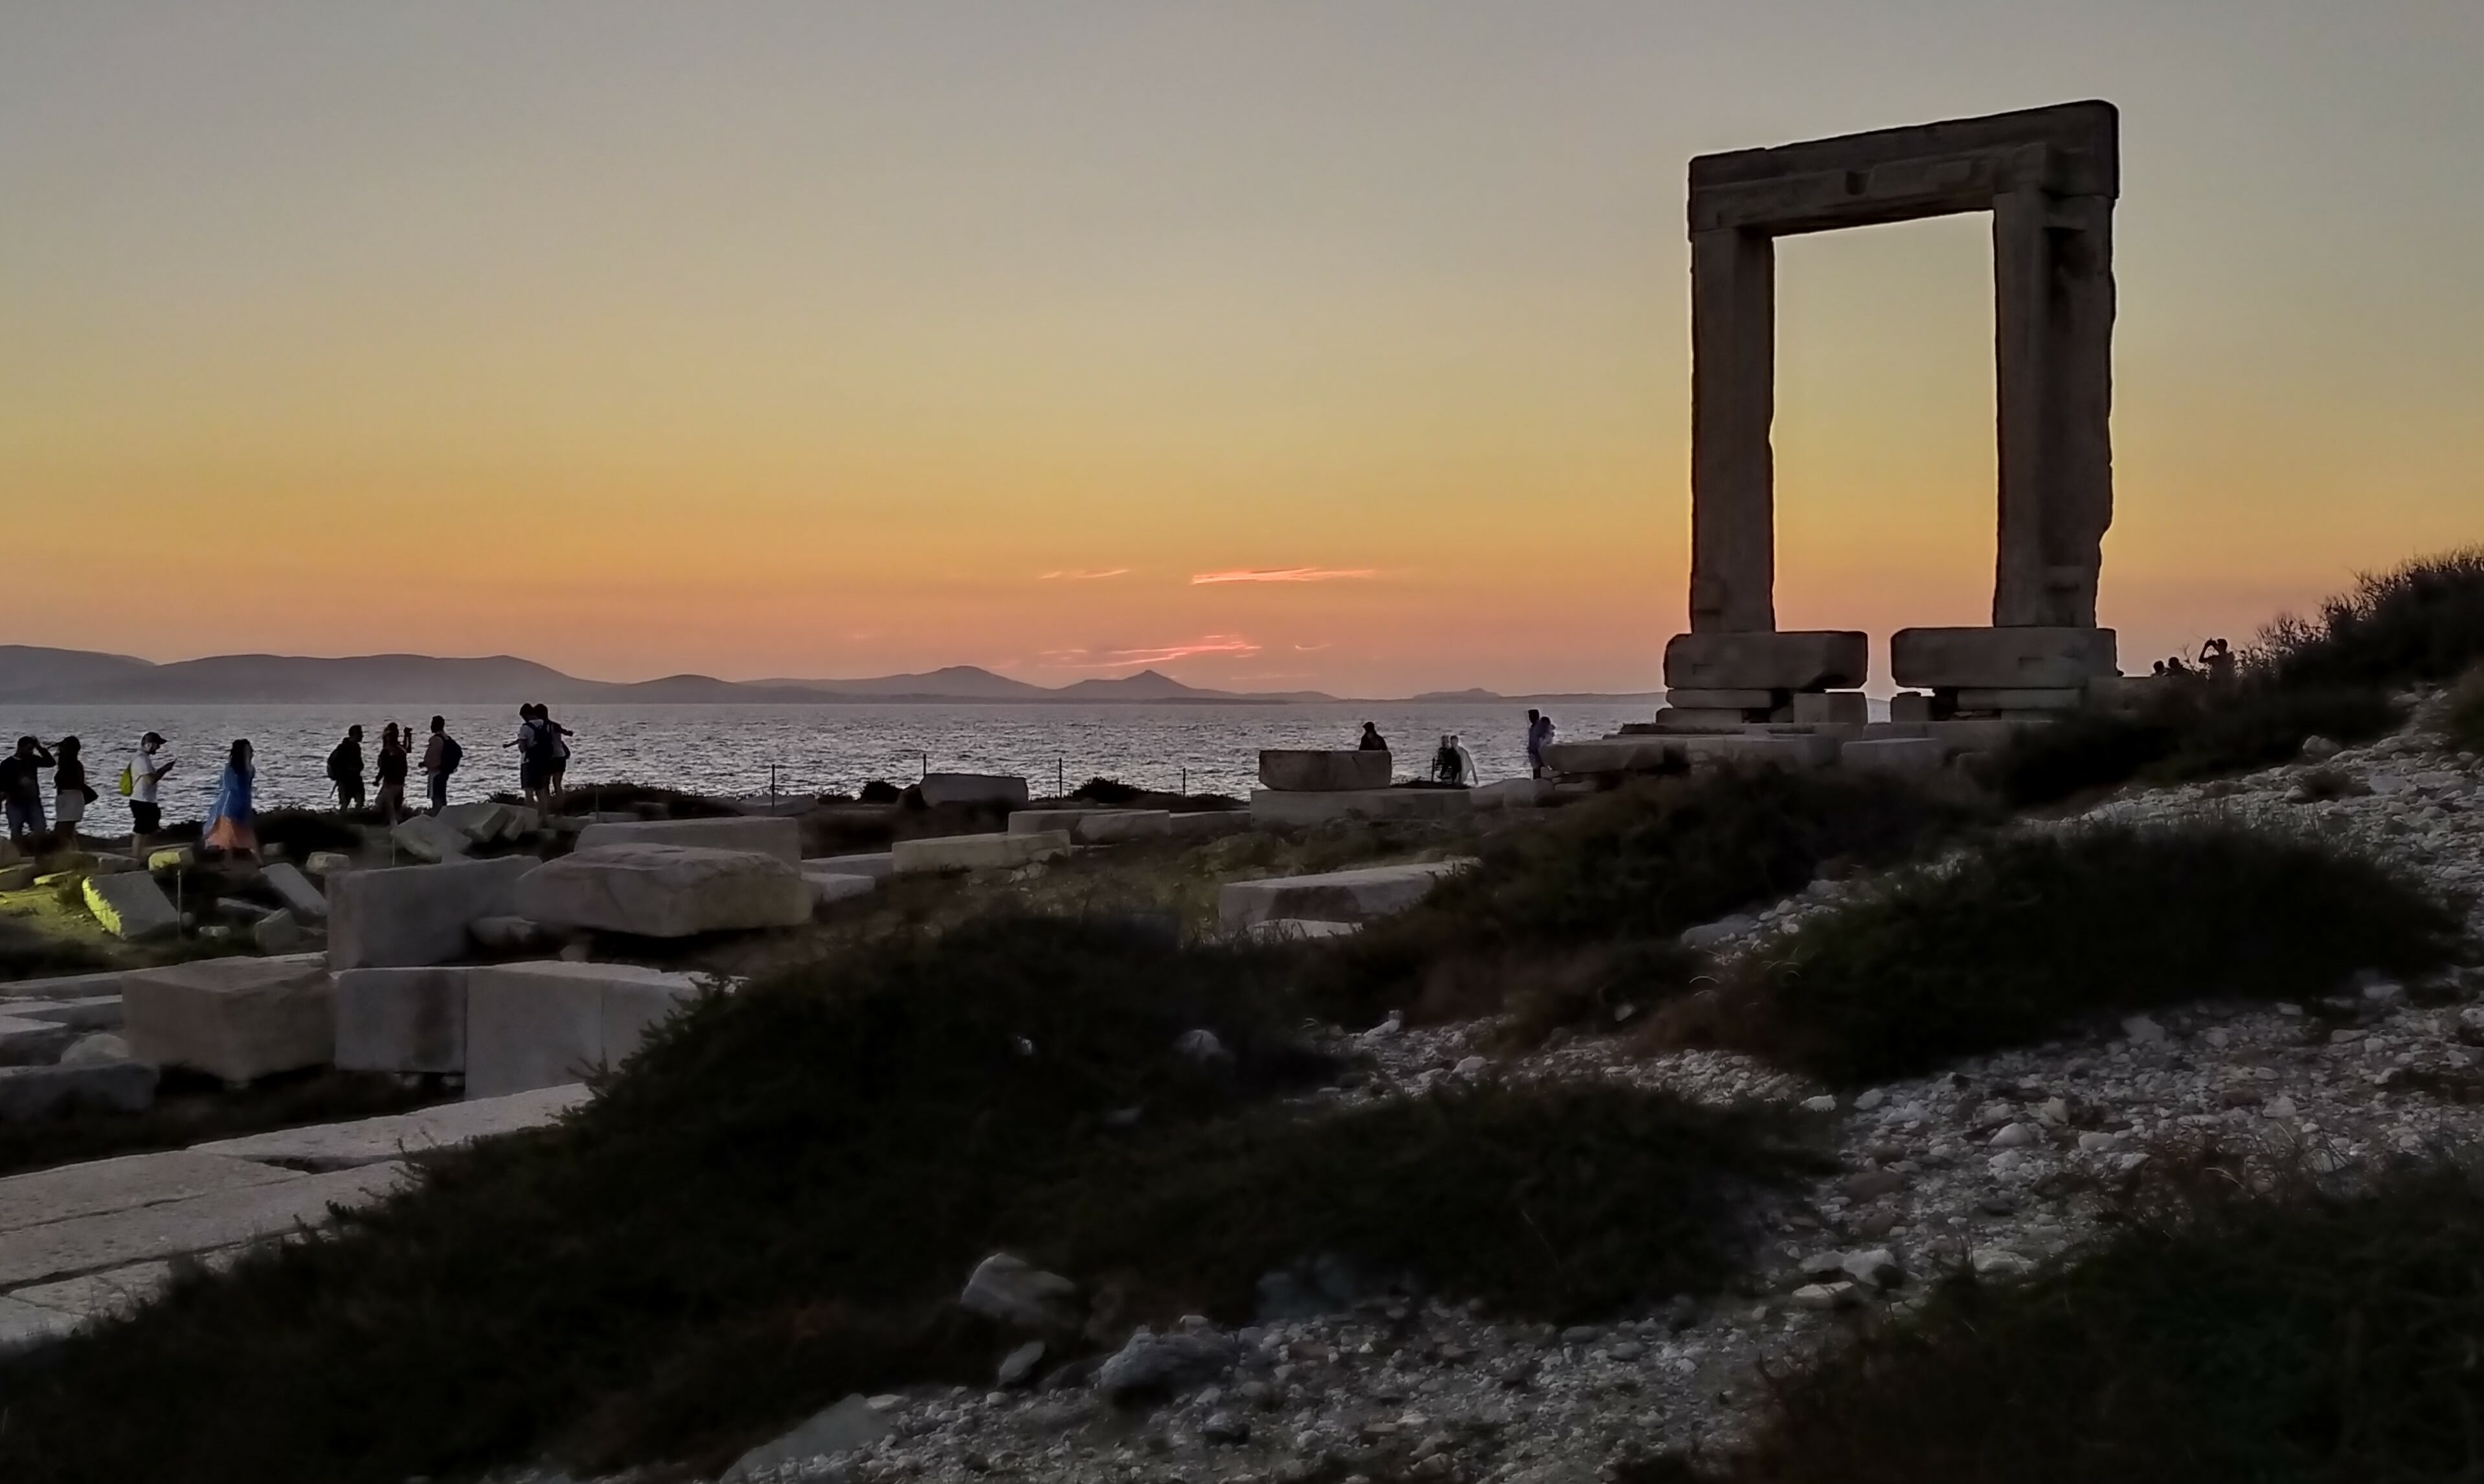 The Portara, or Big Door, greets you at Naxos